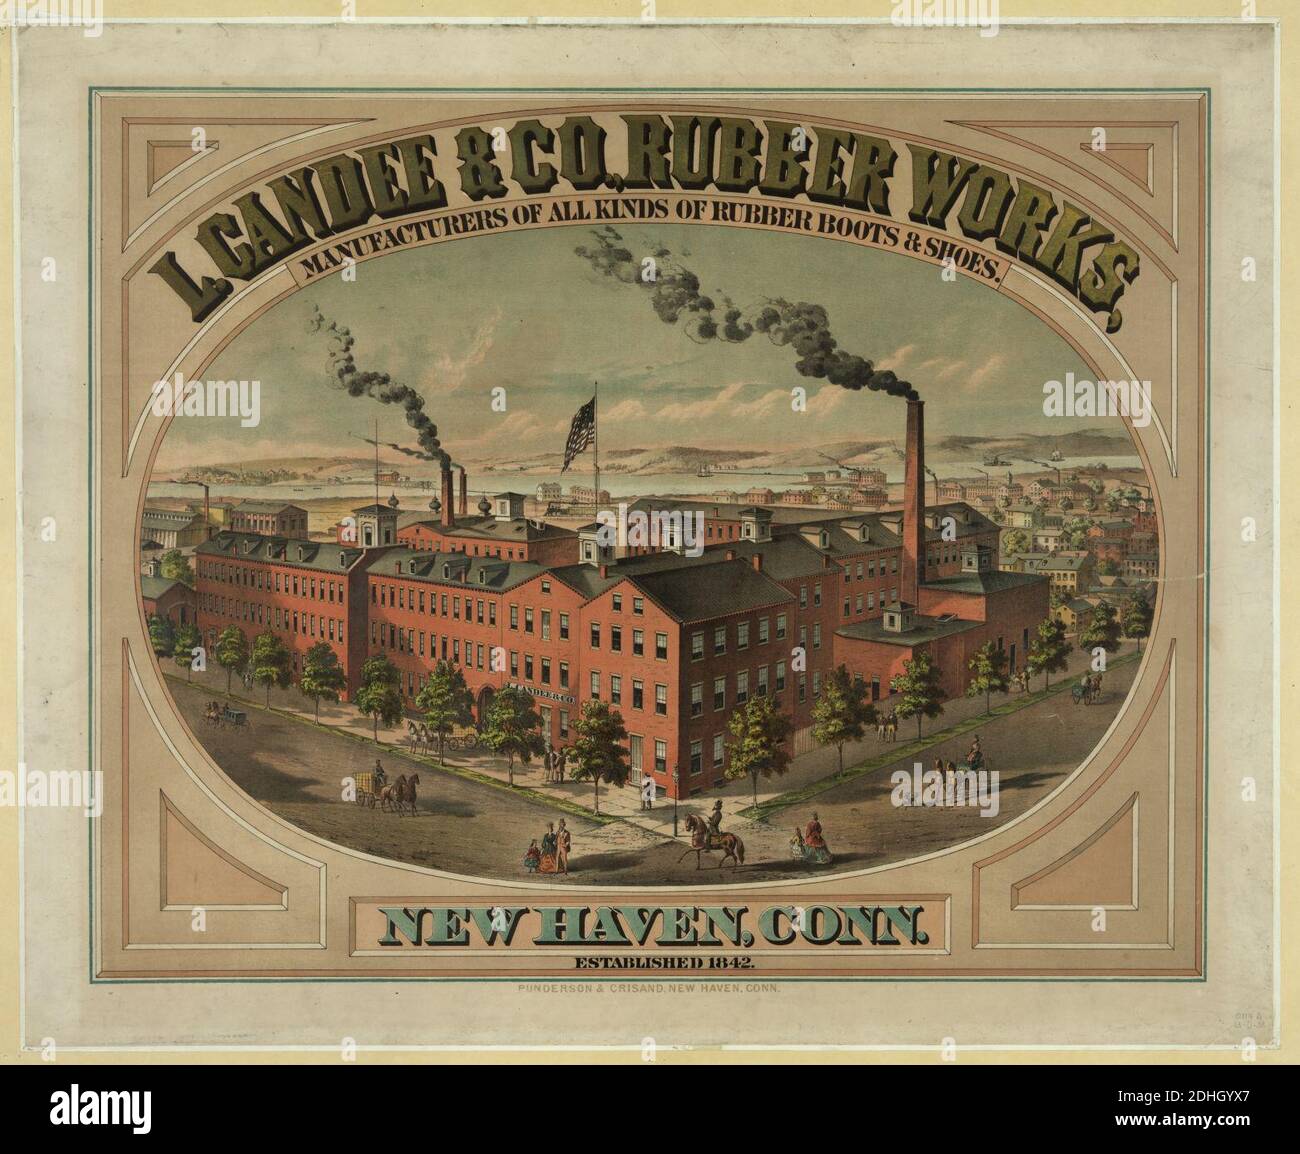 L. Candee & Co., Gummi, Hersteller von allen Arten von Gummi Stiefel & Schuhe. New Haven, Anschl. Gegründet 1842 Stockfoto